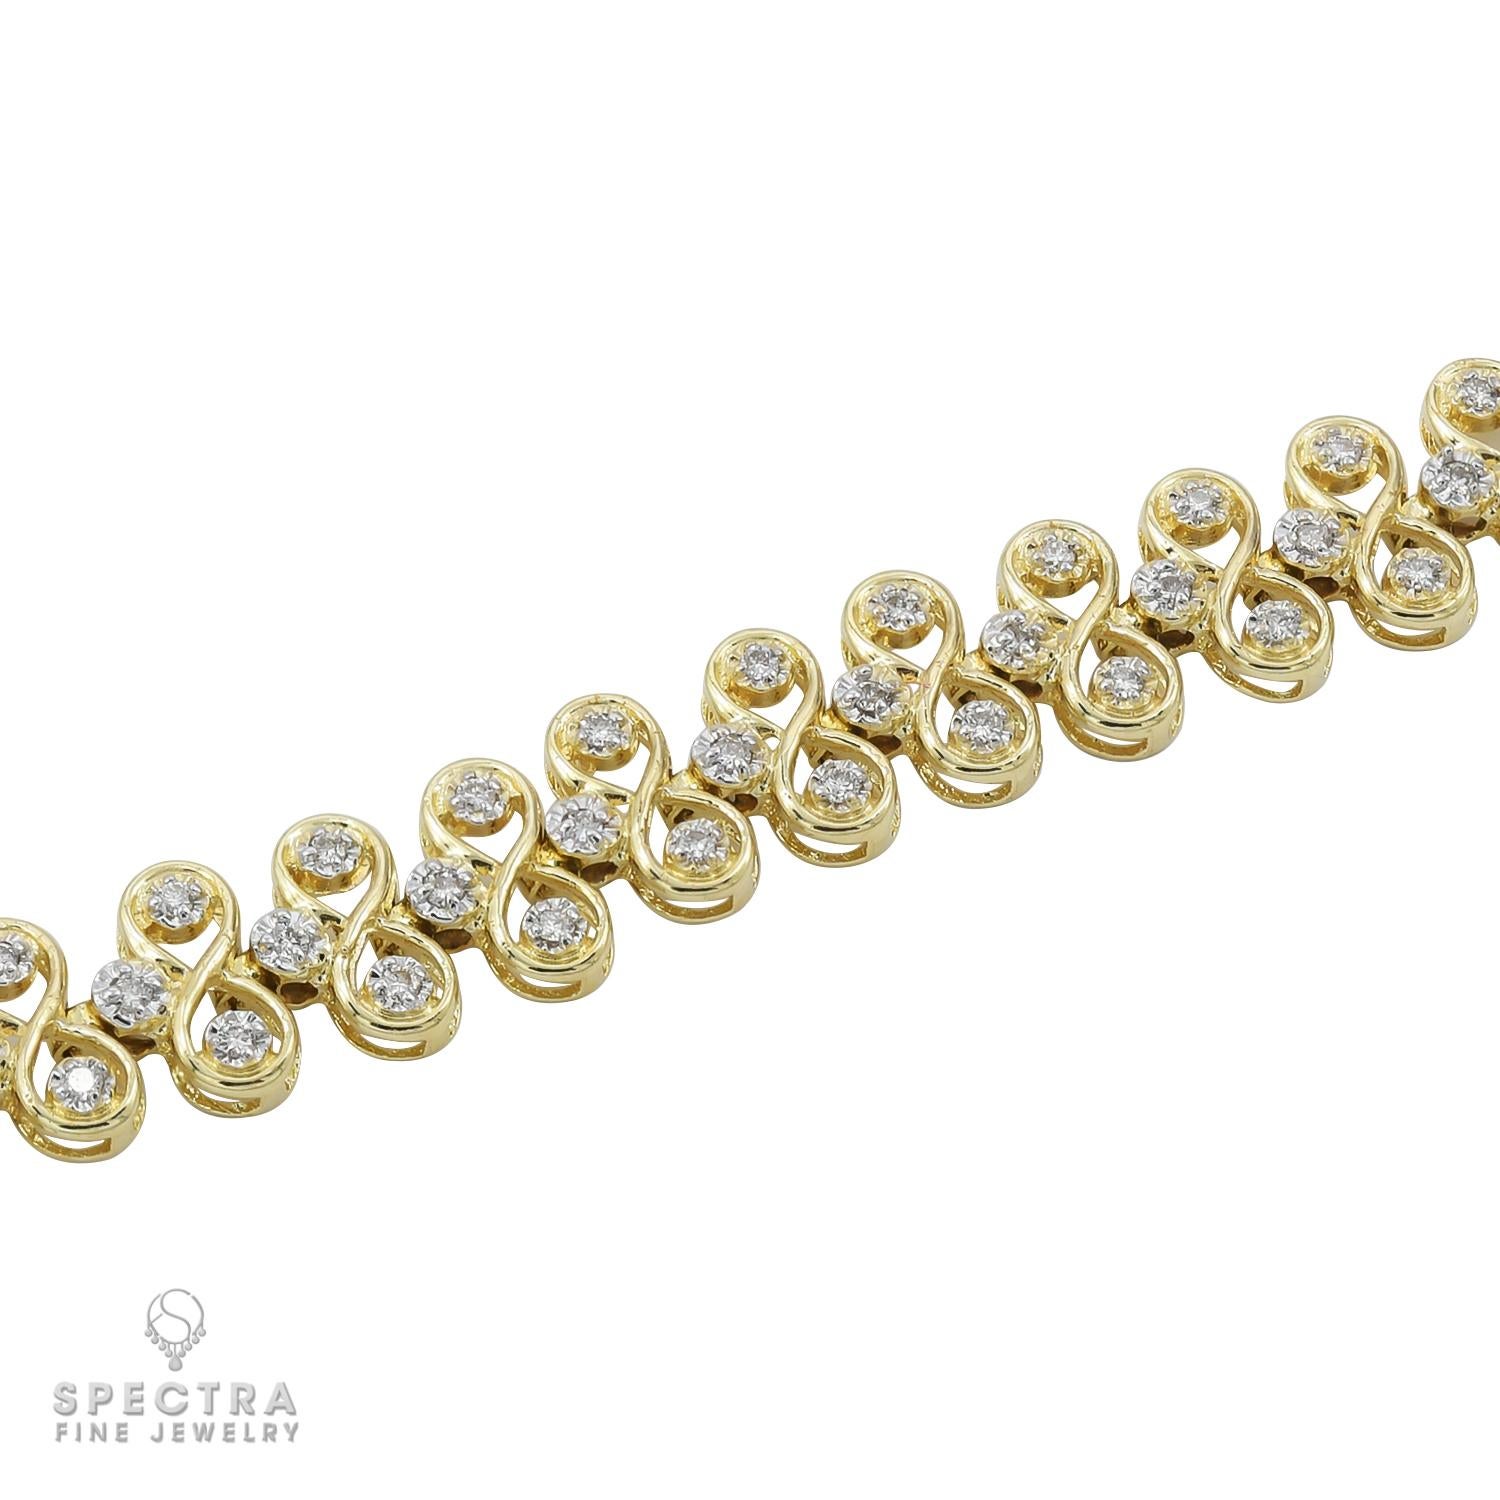 Round Cut Spectra Fine Jewelry 14k Yellow Gold Diamond Bracelet For Sale